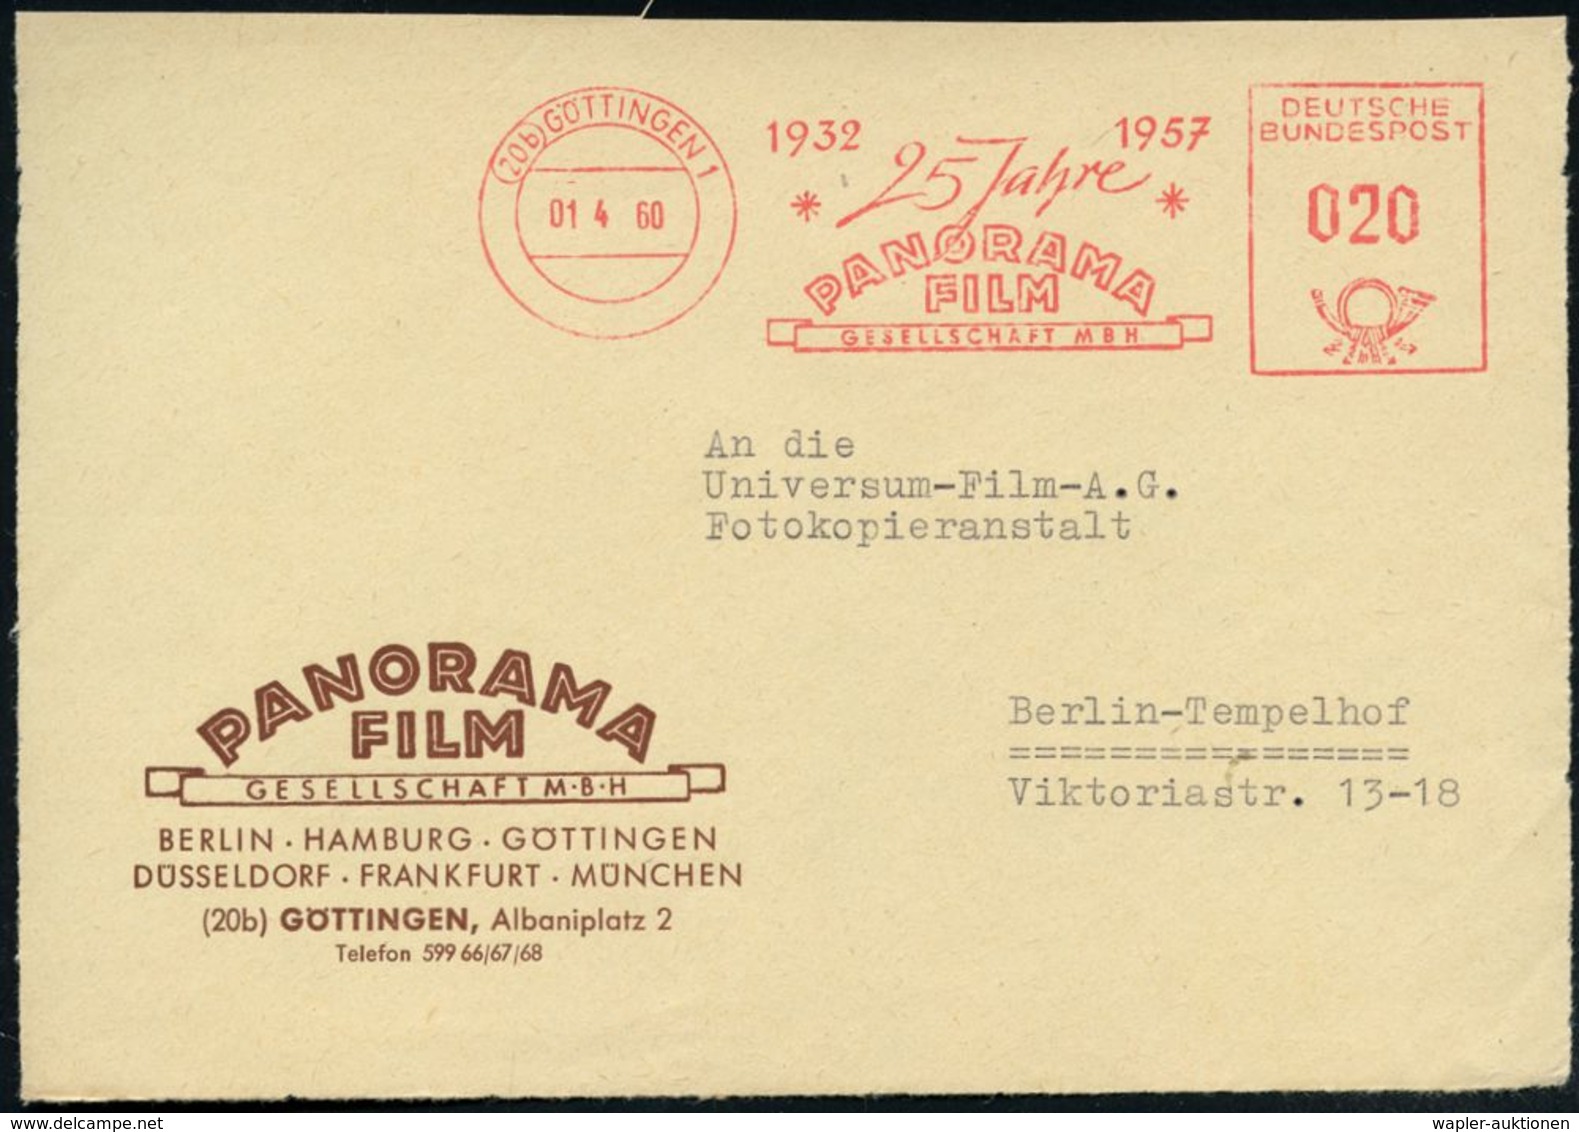 (20 B) GÖTTINGEN 1/ 1932 1957/ 25 JAHRE/ PANORAMA/ FILM/ GESELLSCHAFT MBH 1960 (1.4.) Jubil.-AFS Auf Bedarfs-Vorderseite - Cinéma